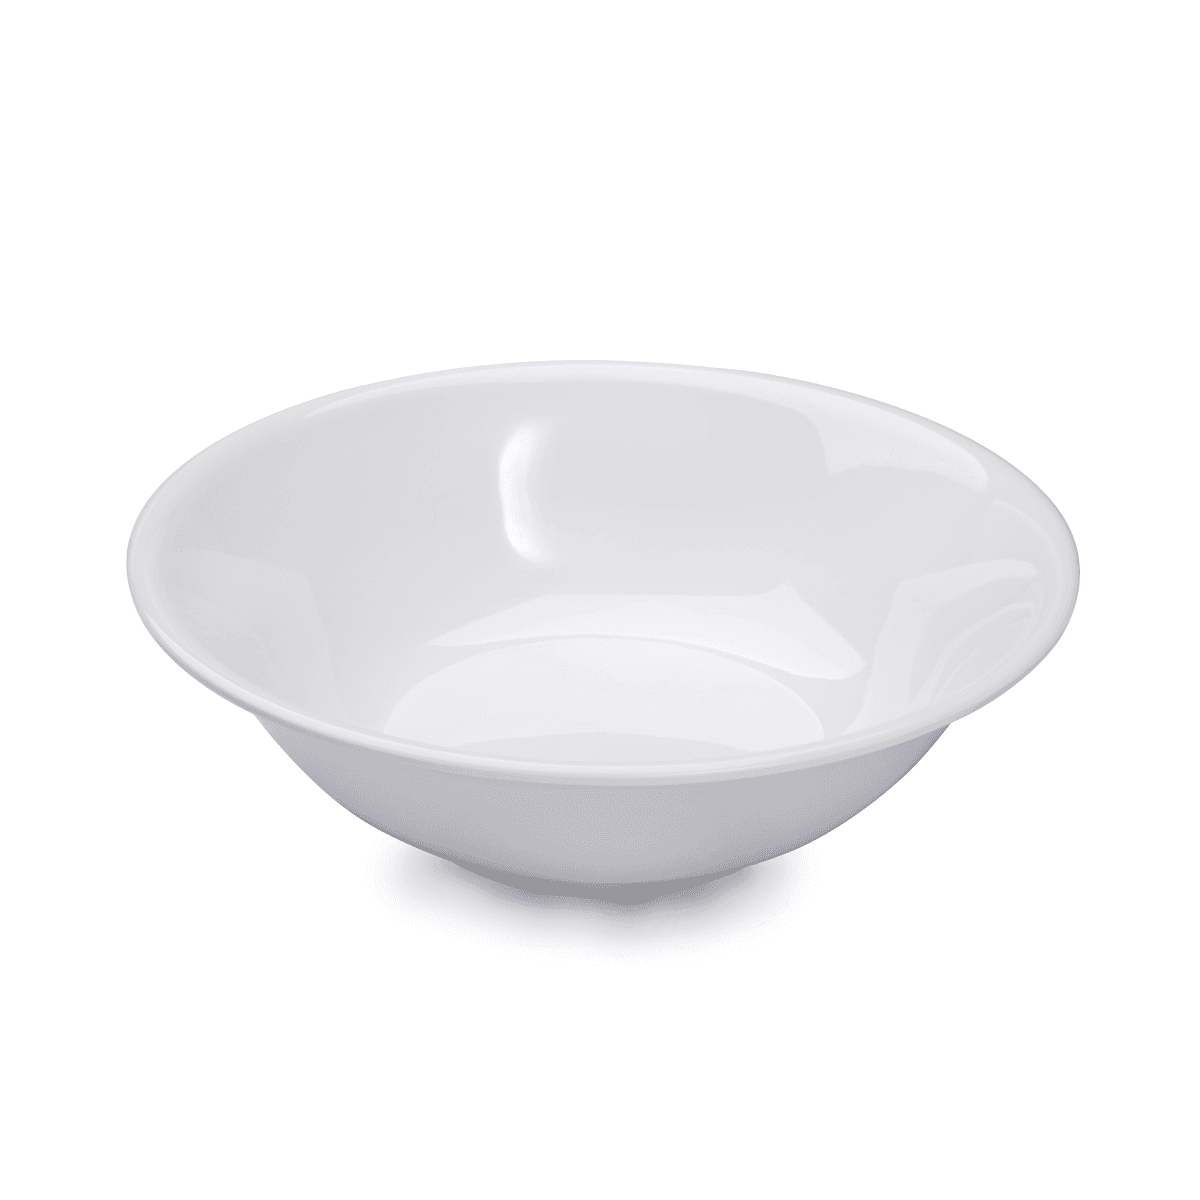 صحن شوربة ميلامين 7 انش أبيض ڨاج Vague Melamine Soup Bowl